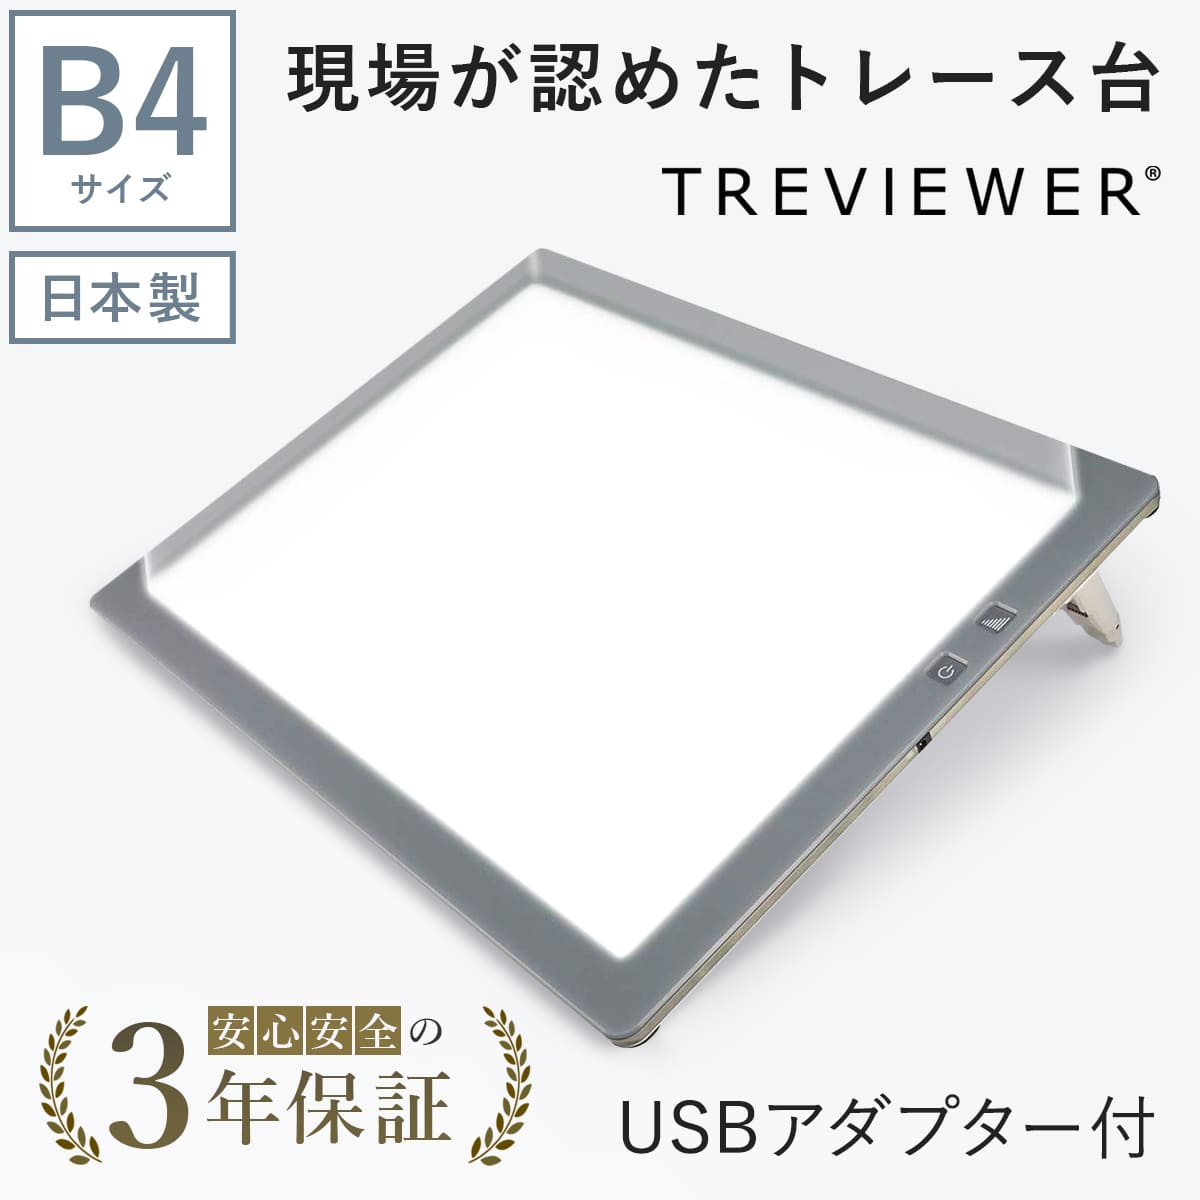 【日本製】 トレース台 トレビュアー B4 グレー  USBケーブル付き 薄型 7段階調光 3年保証 B4-500-02 ライトボックス ライトボード ライトテーブル トライテック｜y-trytec